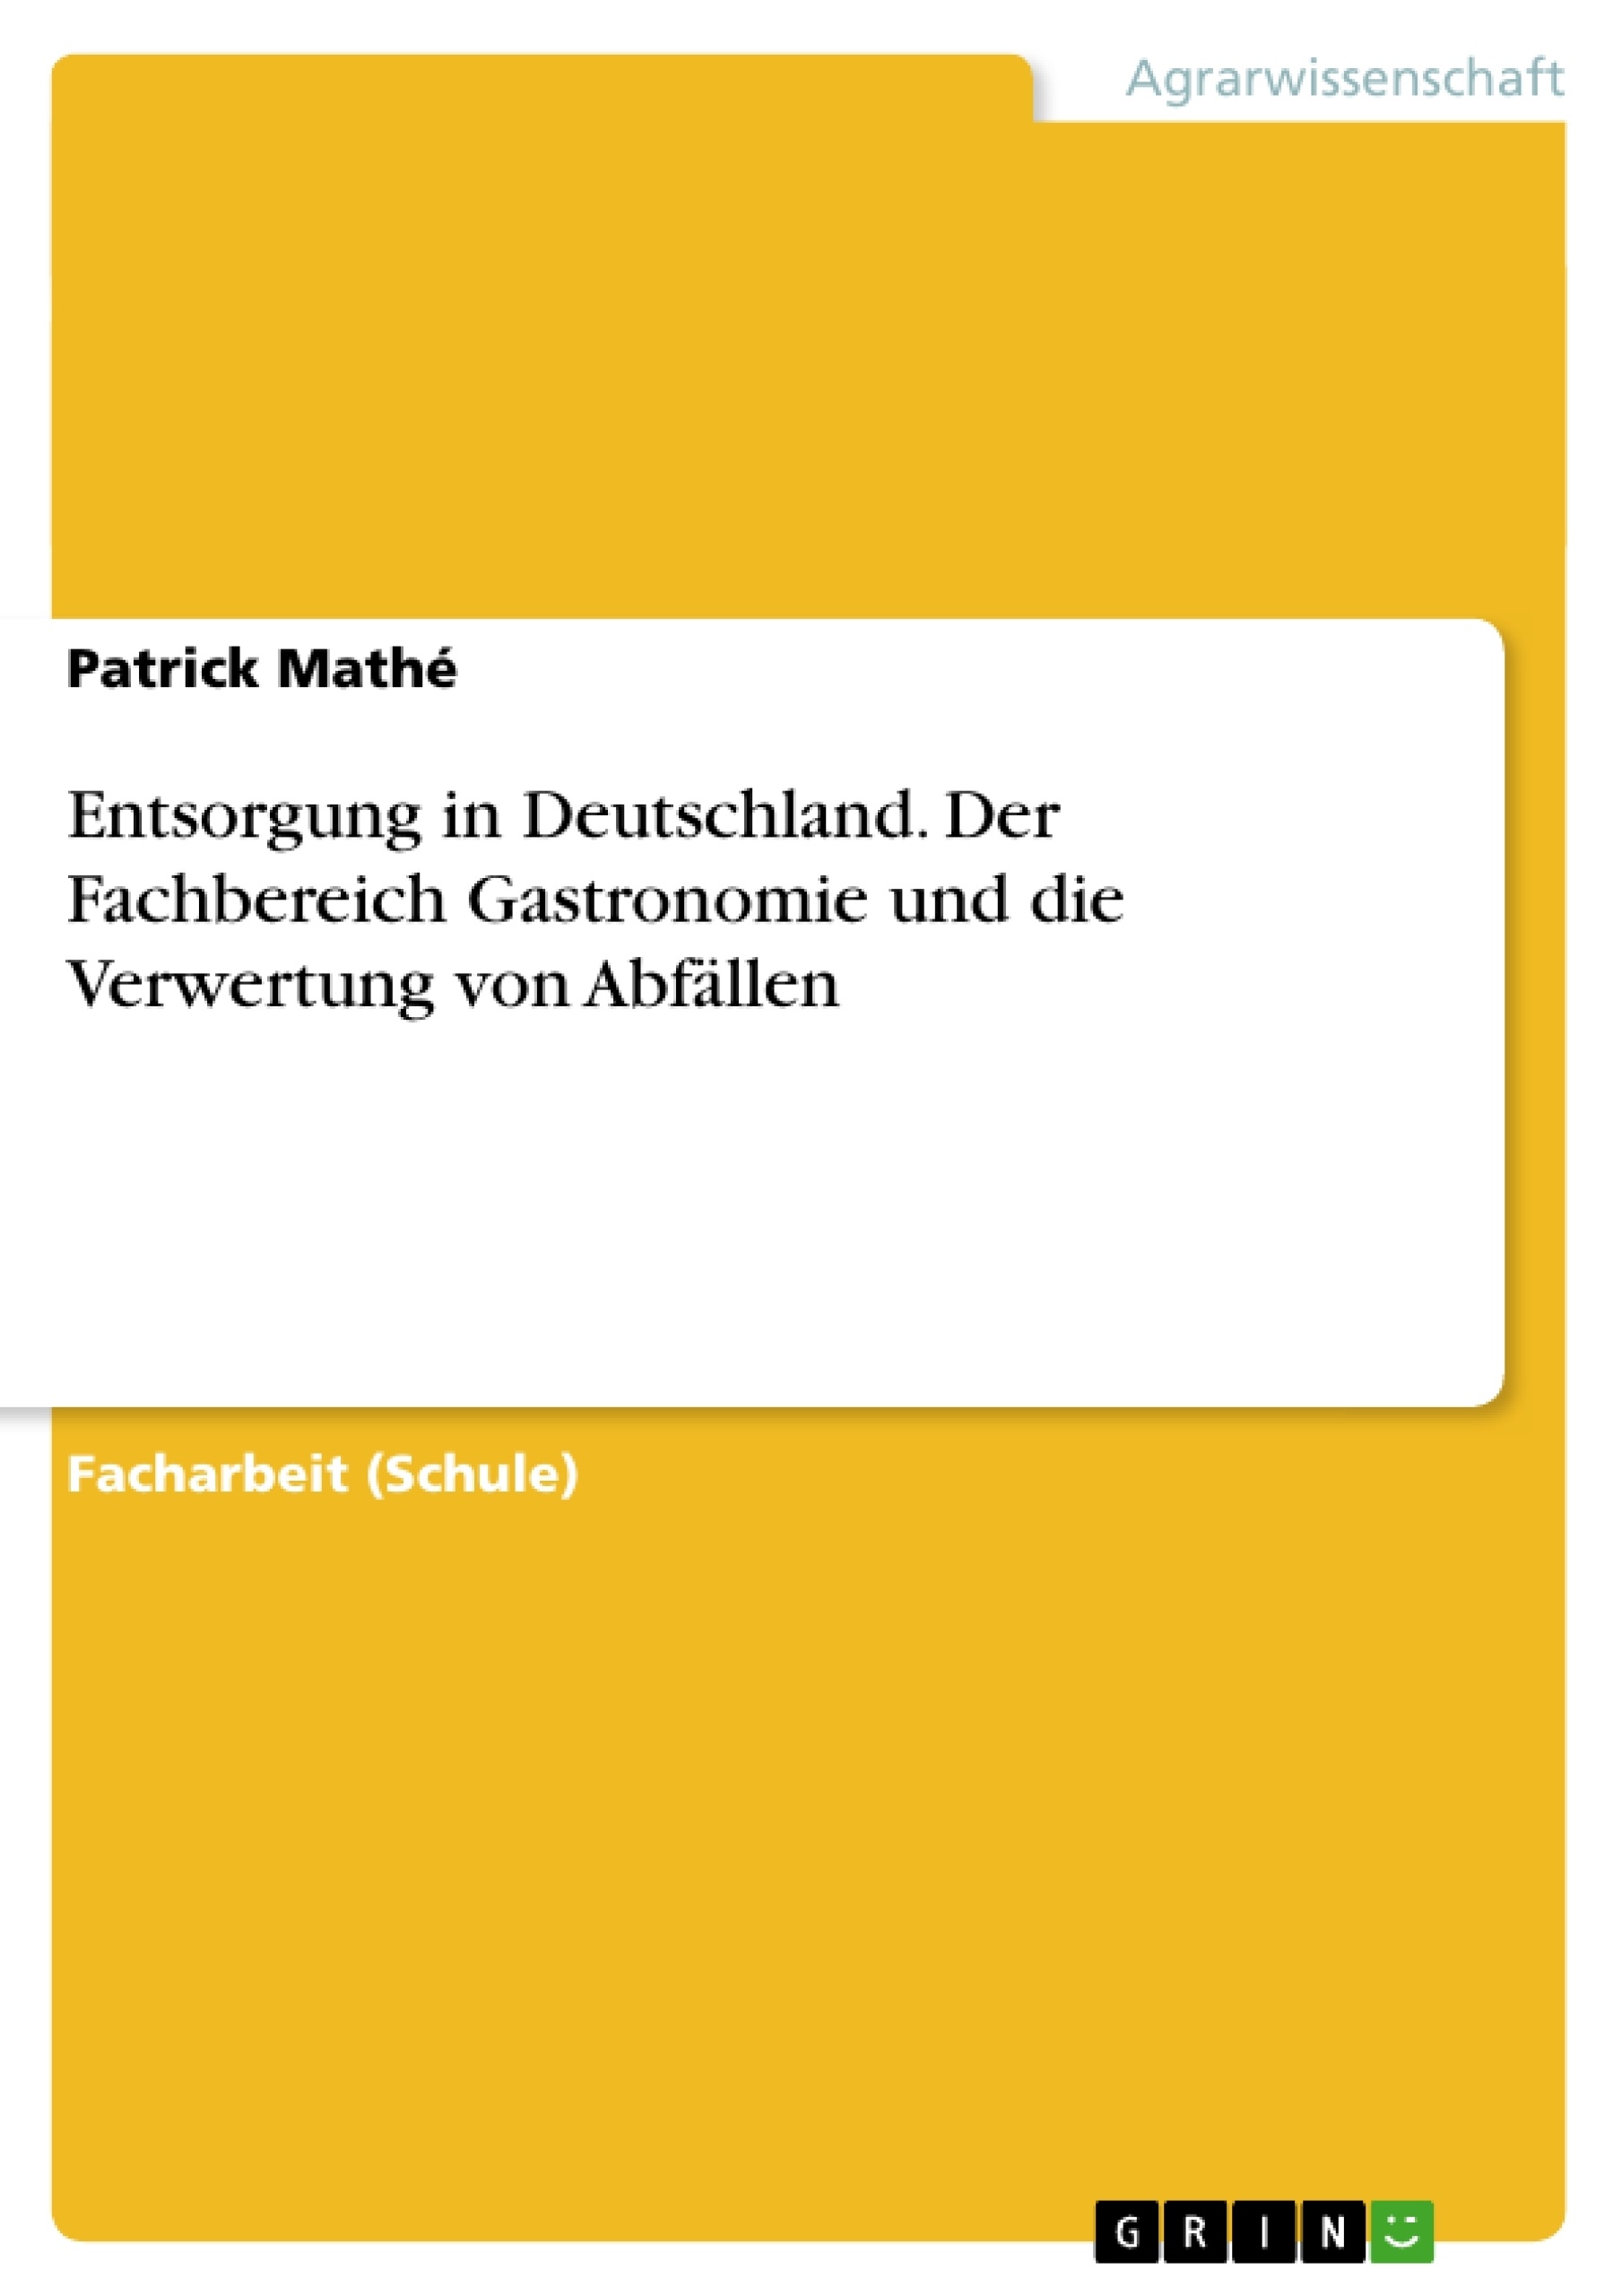 Titel: Entsorgung in Deutschland. Der Fachbereich Gastronomie und die Verwertung von Abfällen